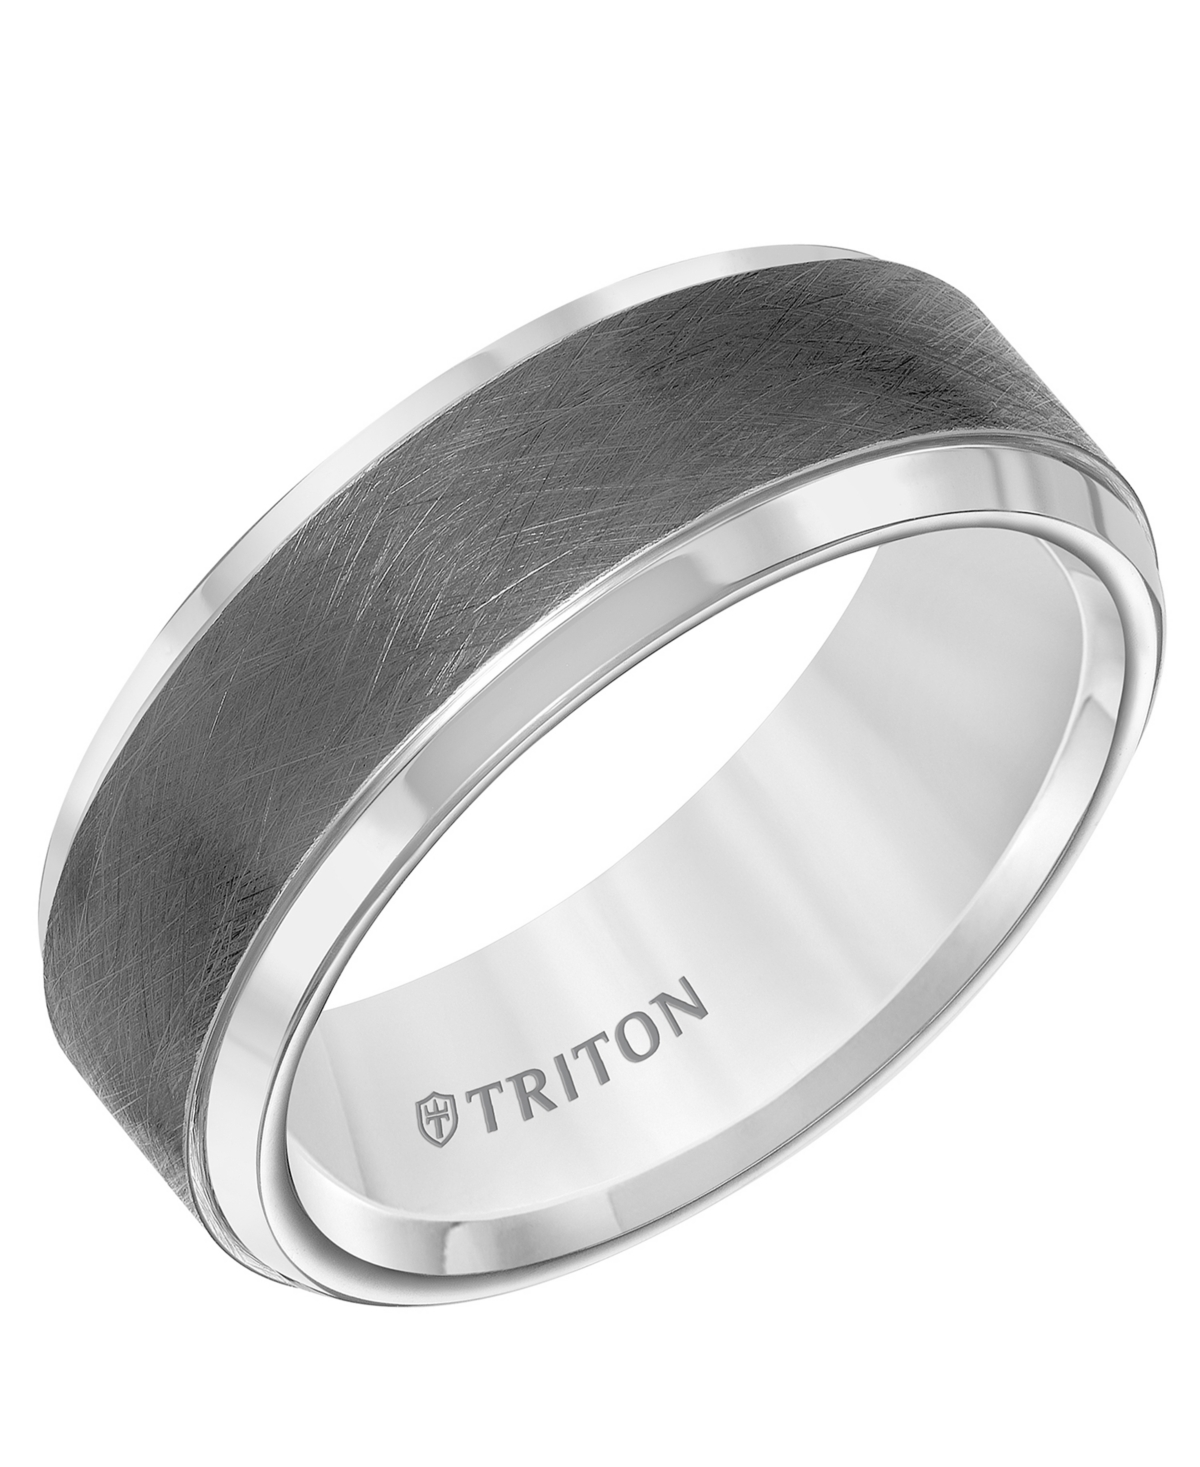 Triton Men's Crystalline Finish Tungsten Comfort Fit Wedding Band In White & Gray Tungsten Carbide In Dark Gray